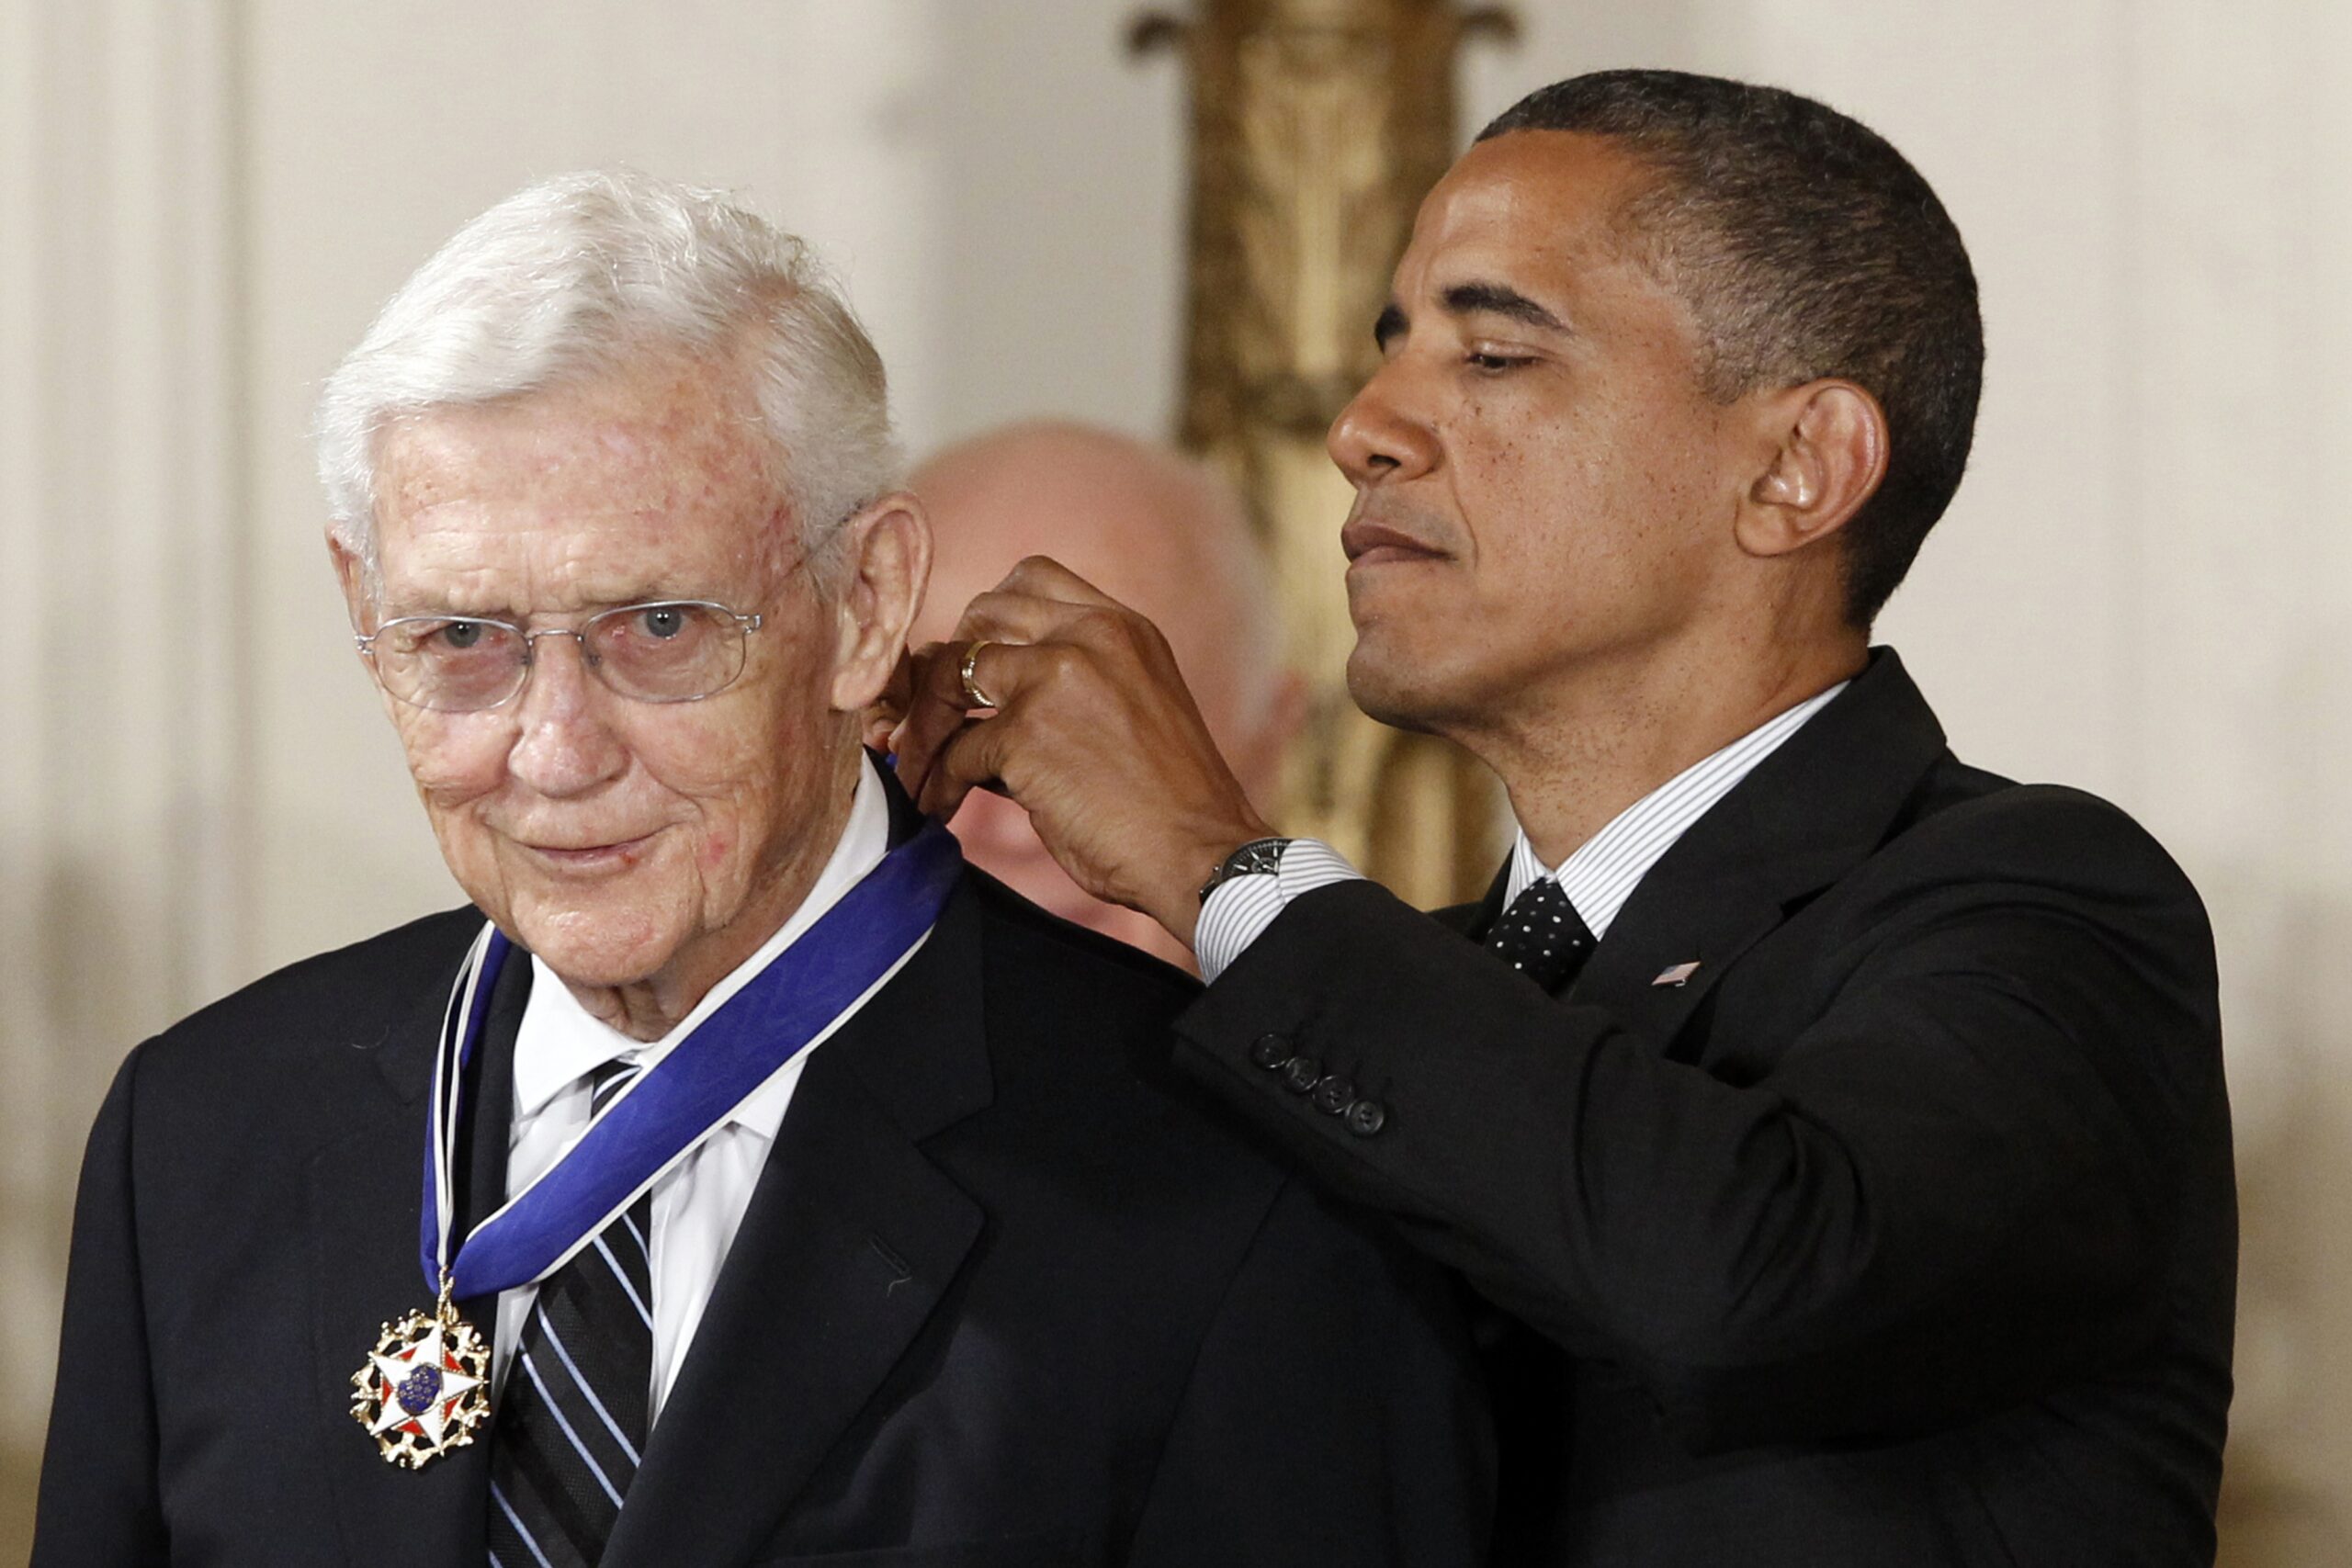 President Barack Obama awards the Medal of Freedom to John Doar